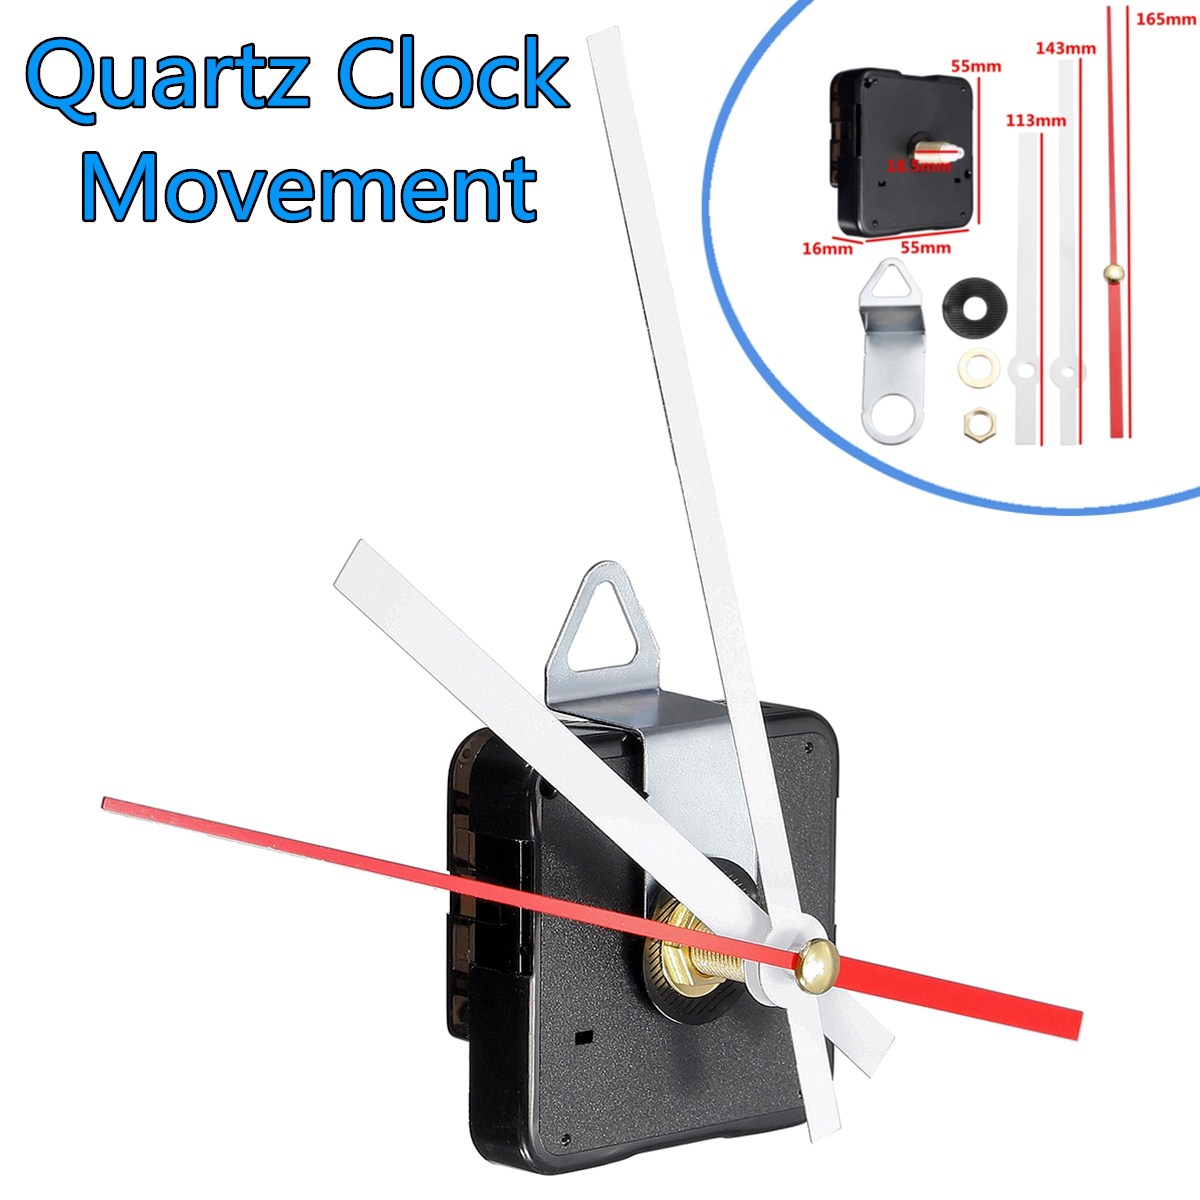 DIY-Quartz-Clock-Movement-Mechanism-Silent-Module-Kit-Hour-Minute-Second-Hands-1335887-1